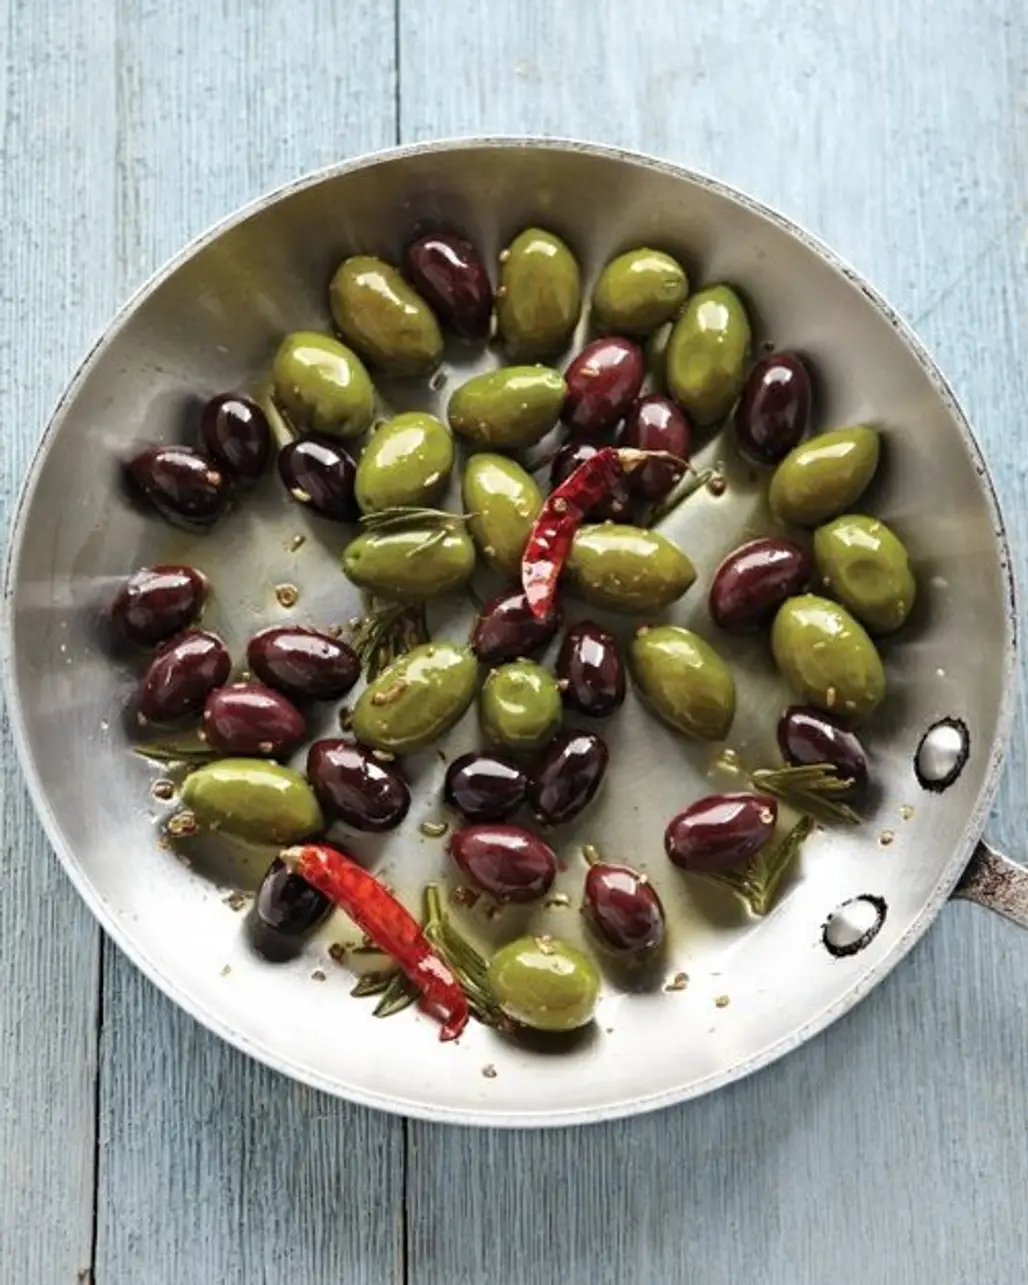 Olives/Olive Oil